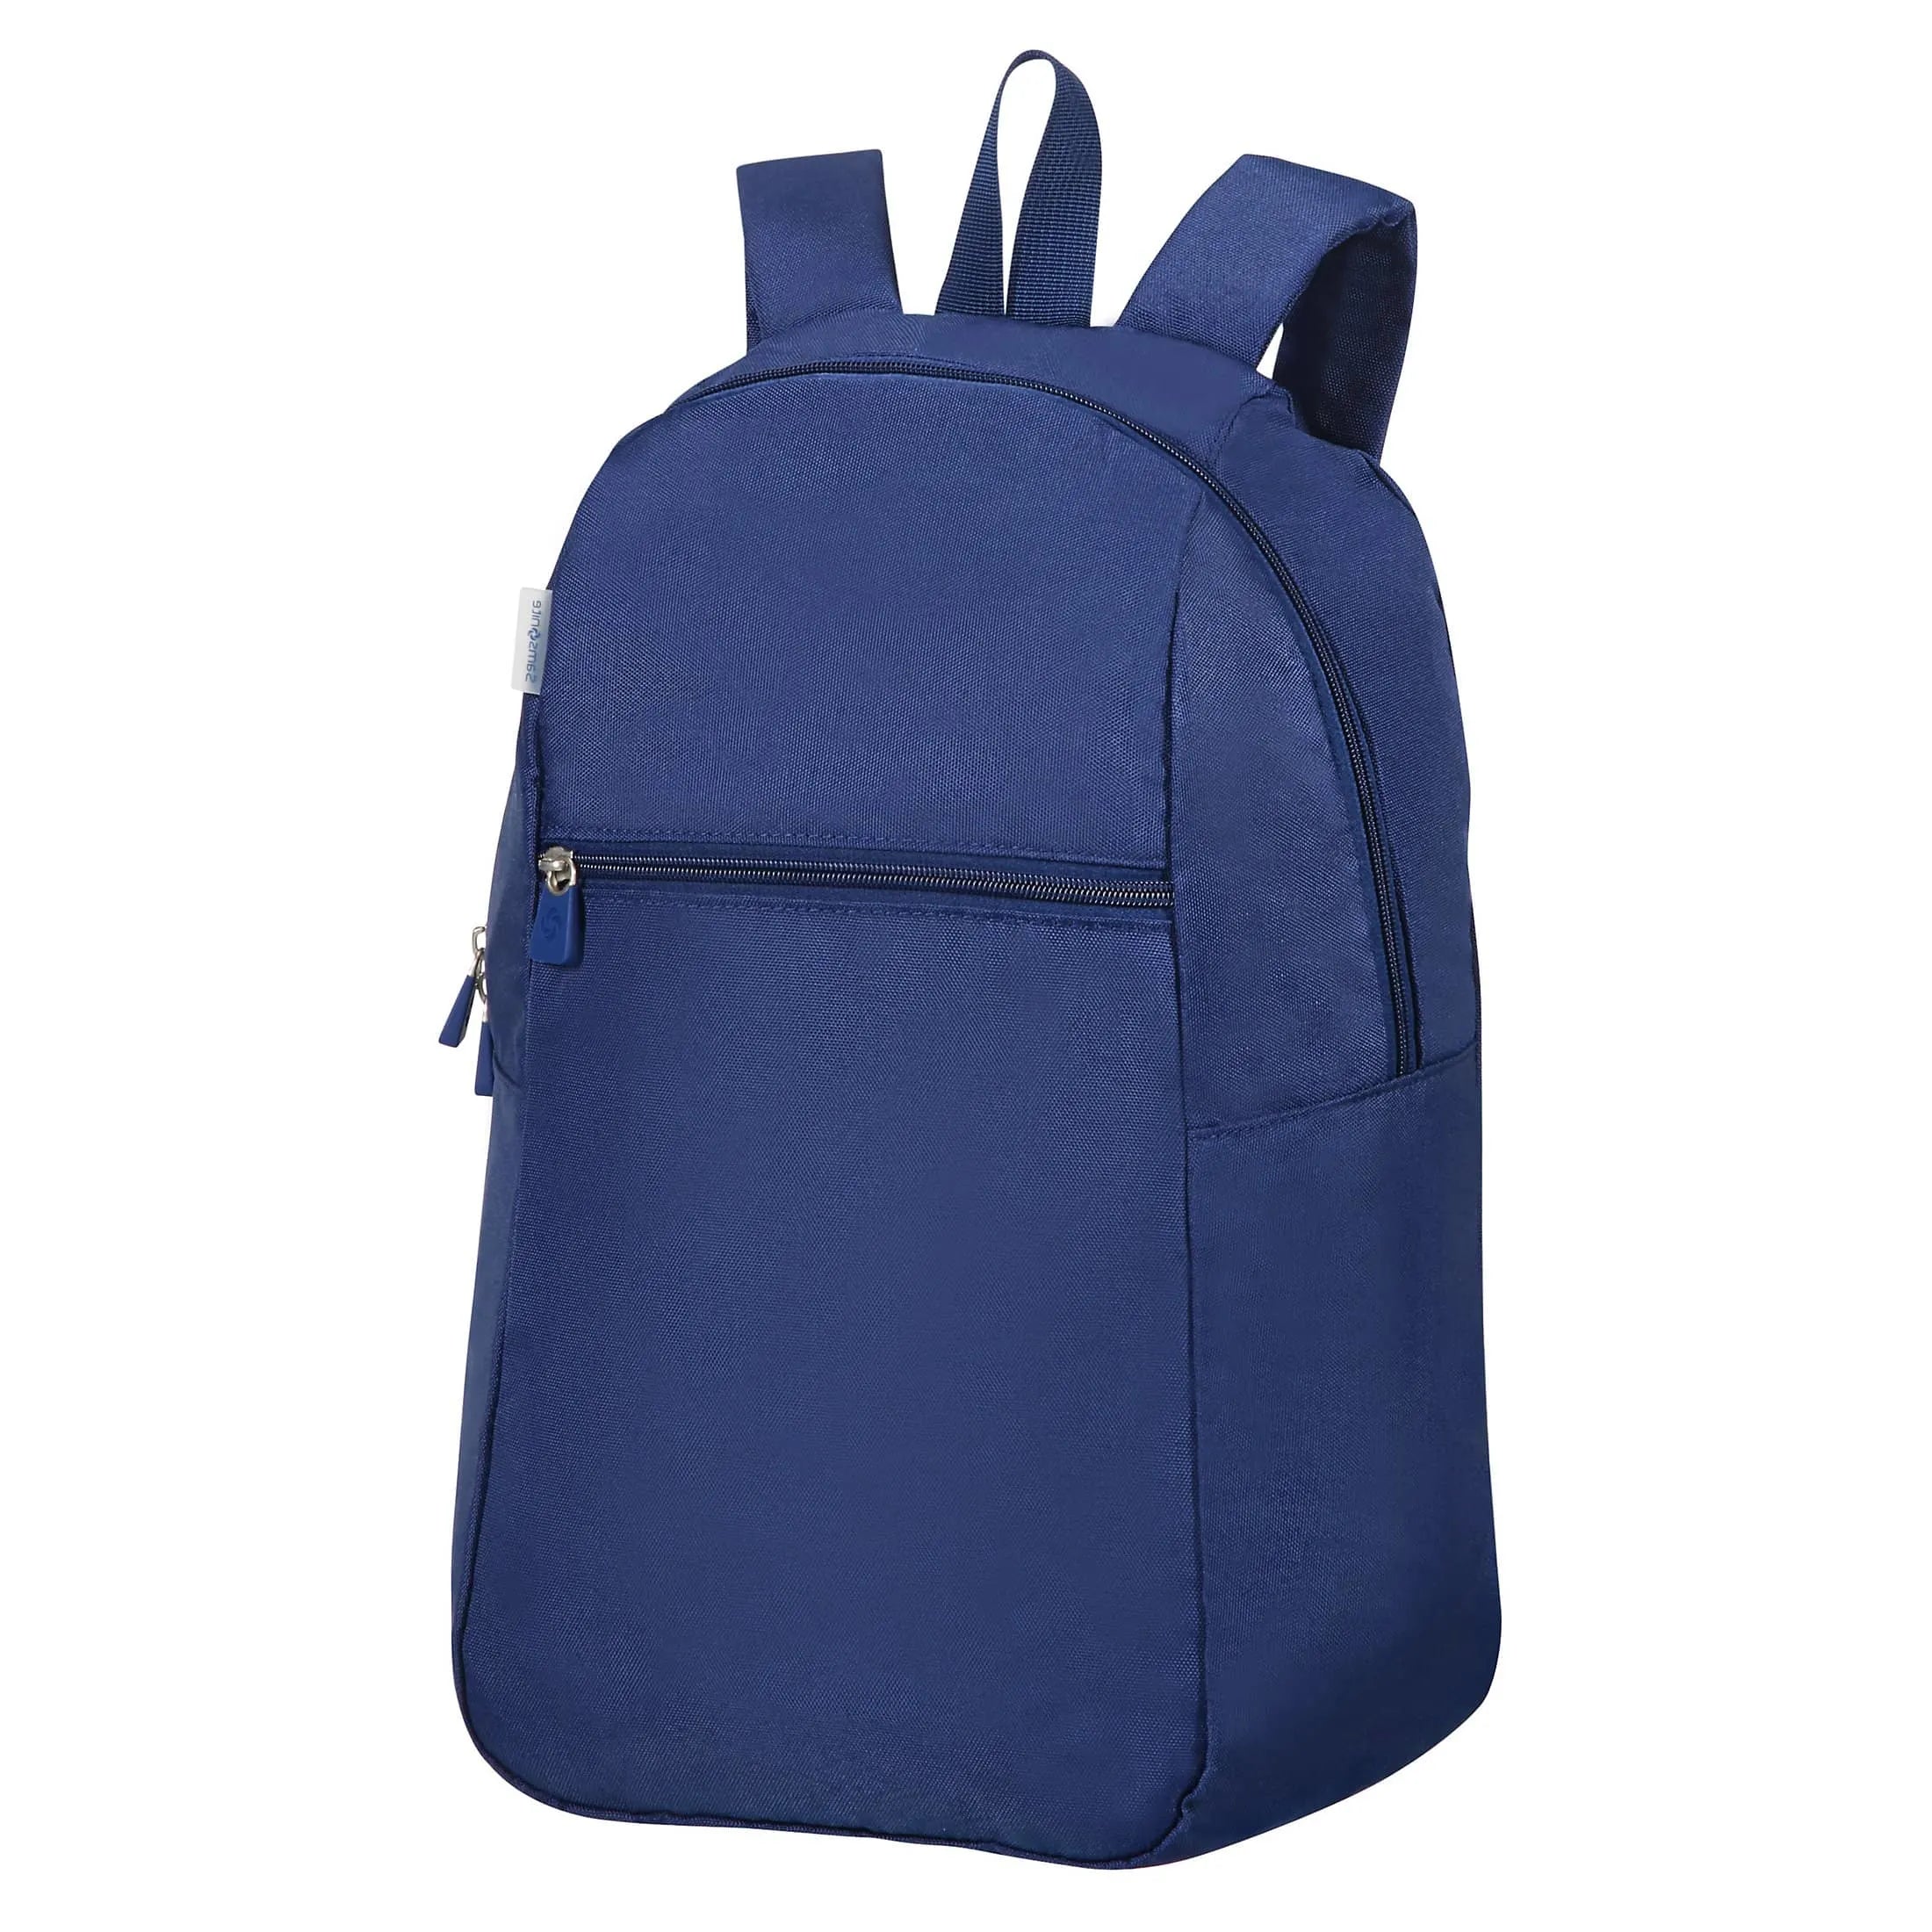 Samsonite Travel Accessories sac à dos pliable 44 cm - bleu nuit